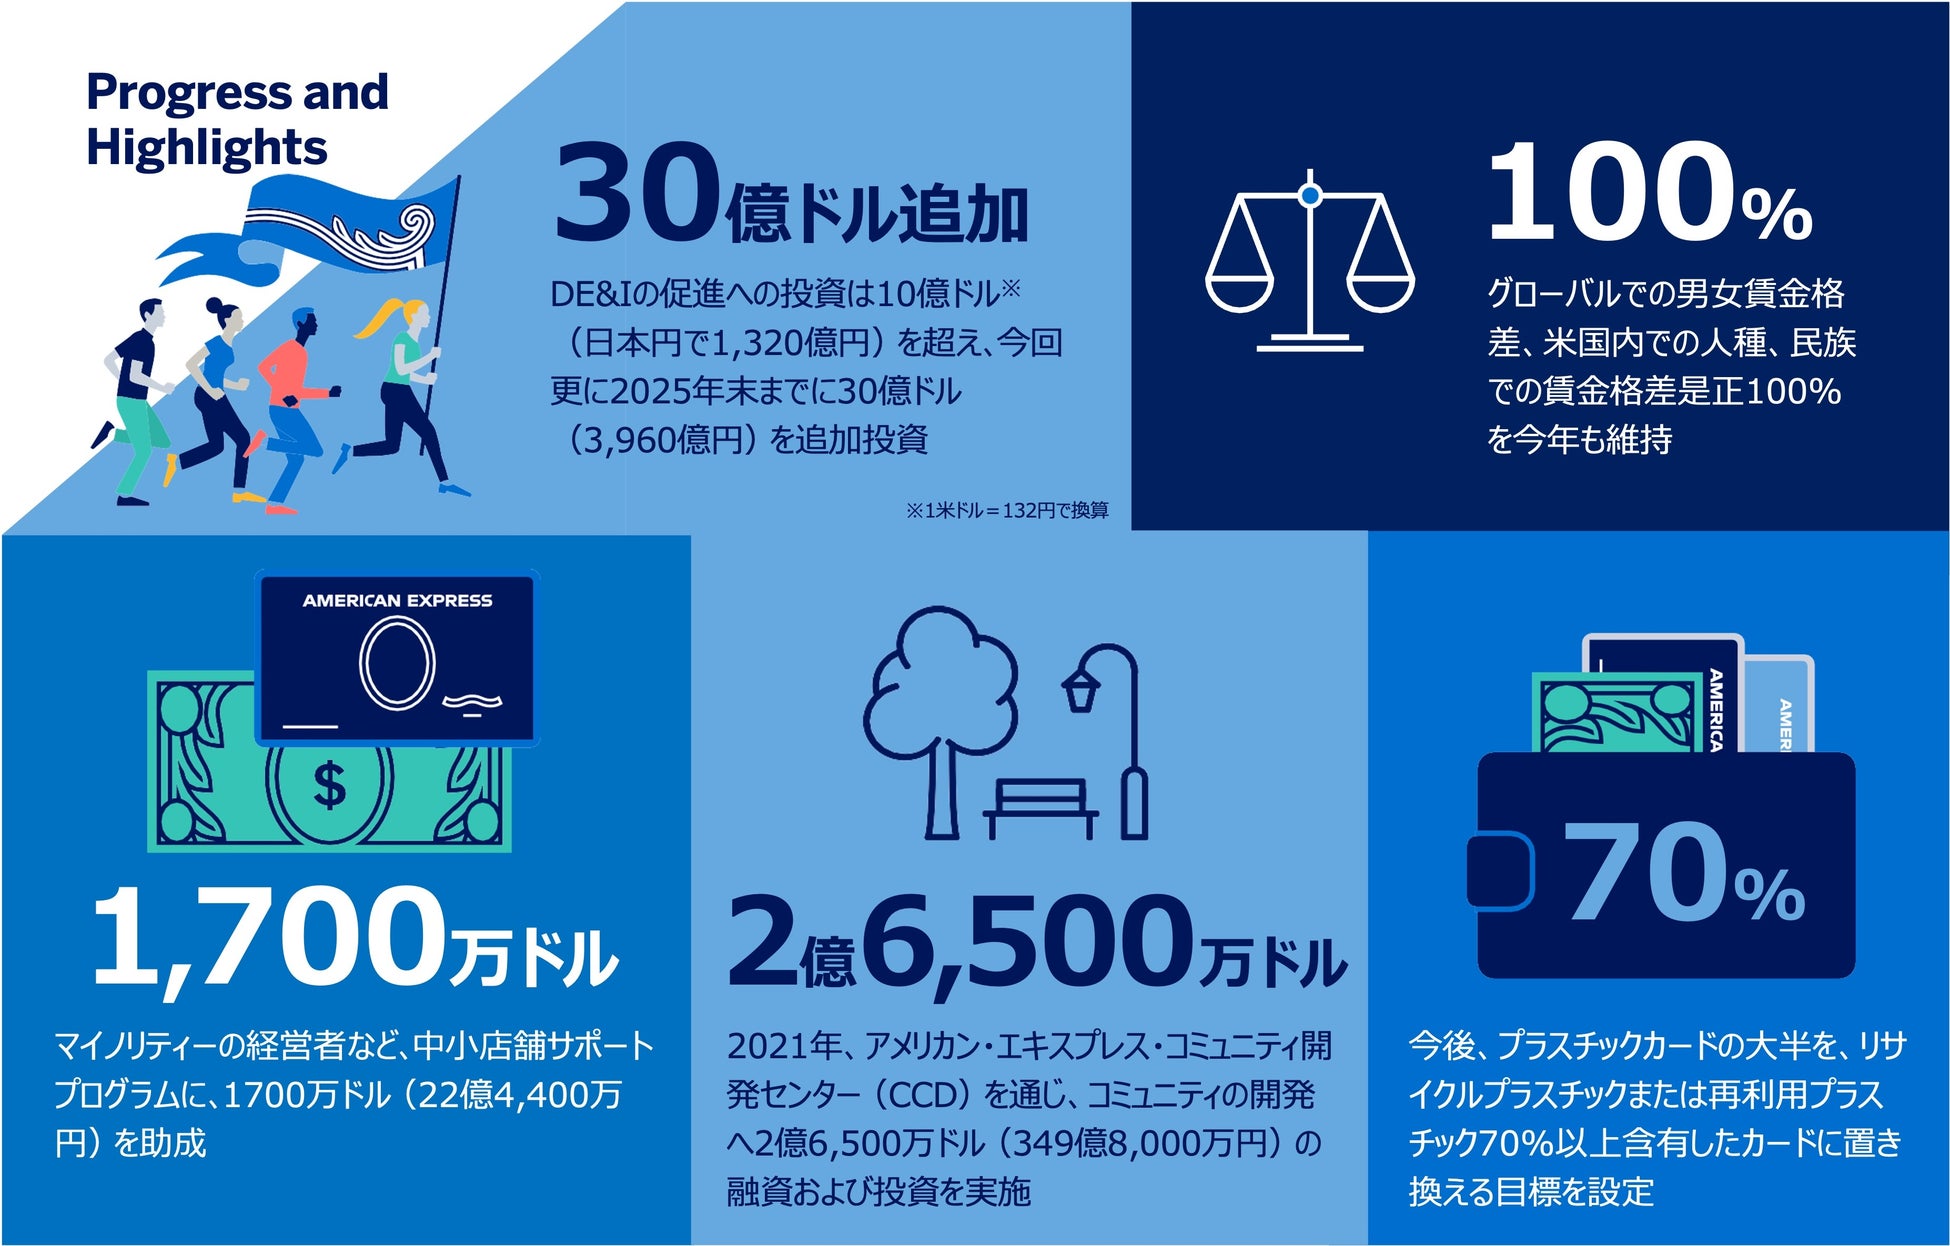 Business Insider Japanが次世代リーダーのライフとマネーに特化した2つのメディアをローンチ 2022.09.06